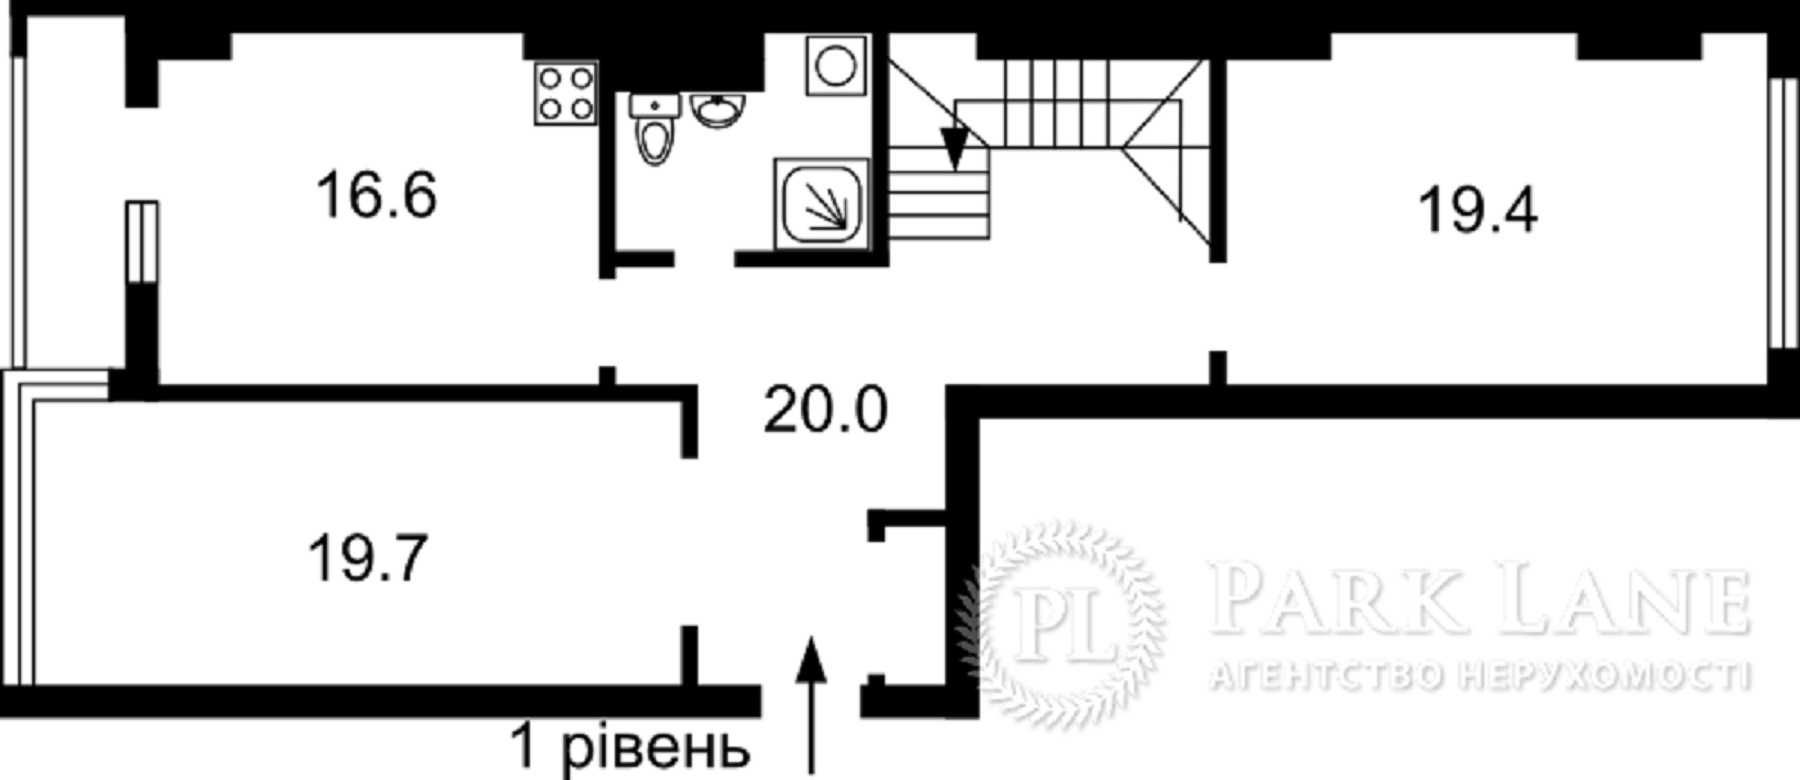 Продам дворівневу квартиру 167 кв.м. Берестейський пр. Нивська 4г